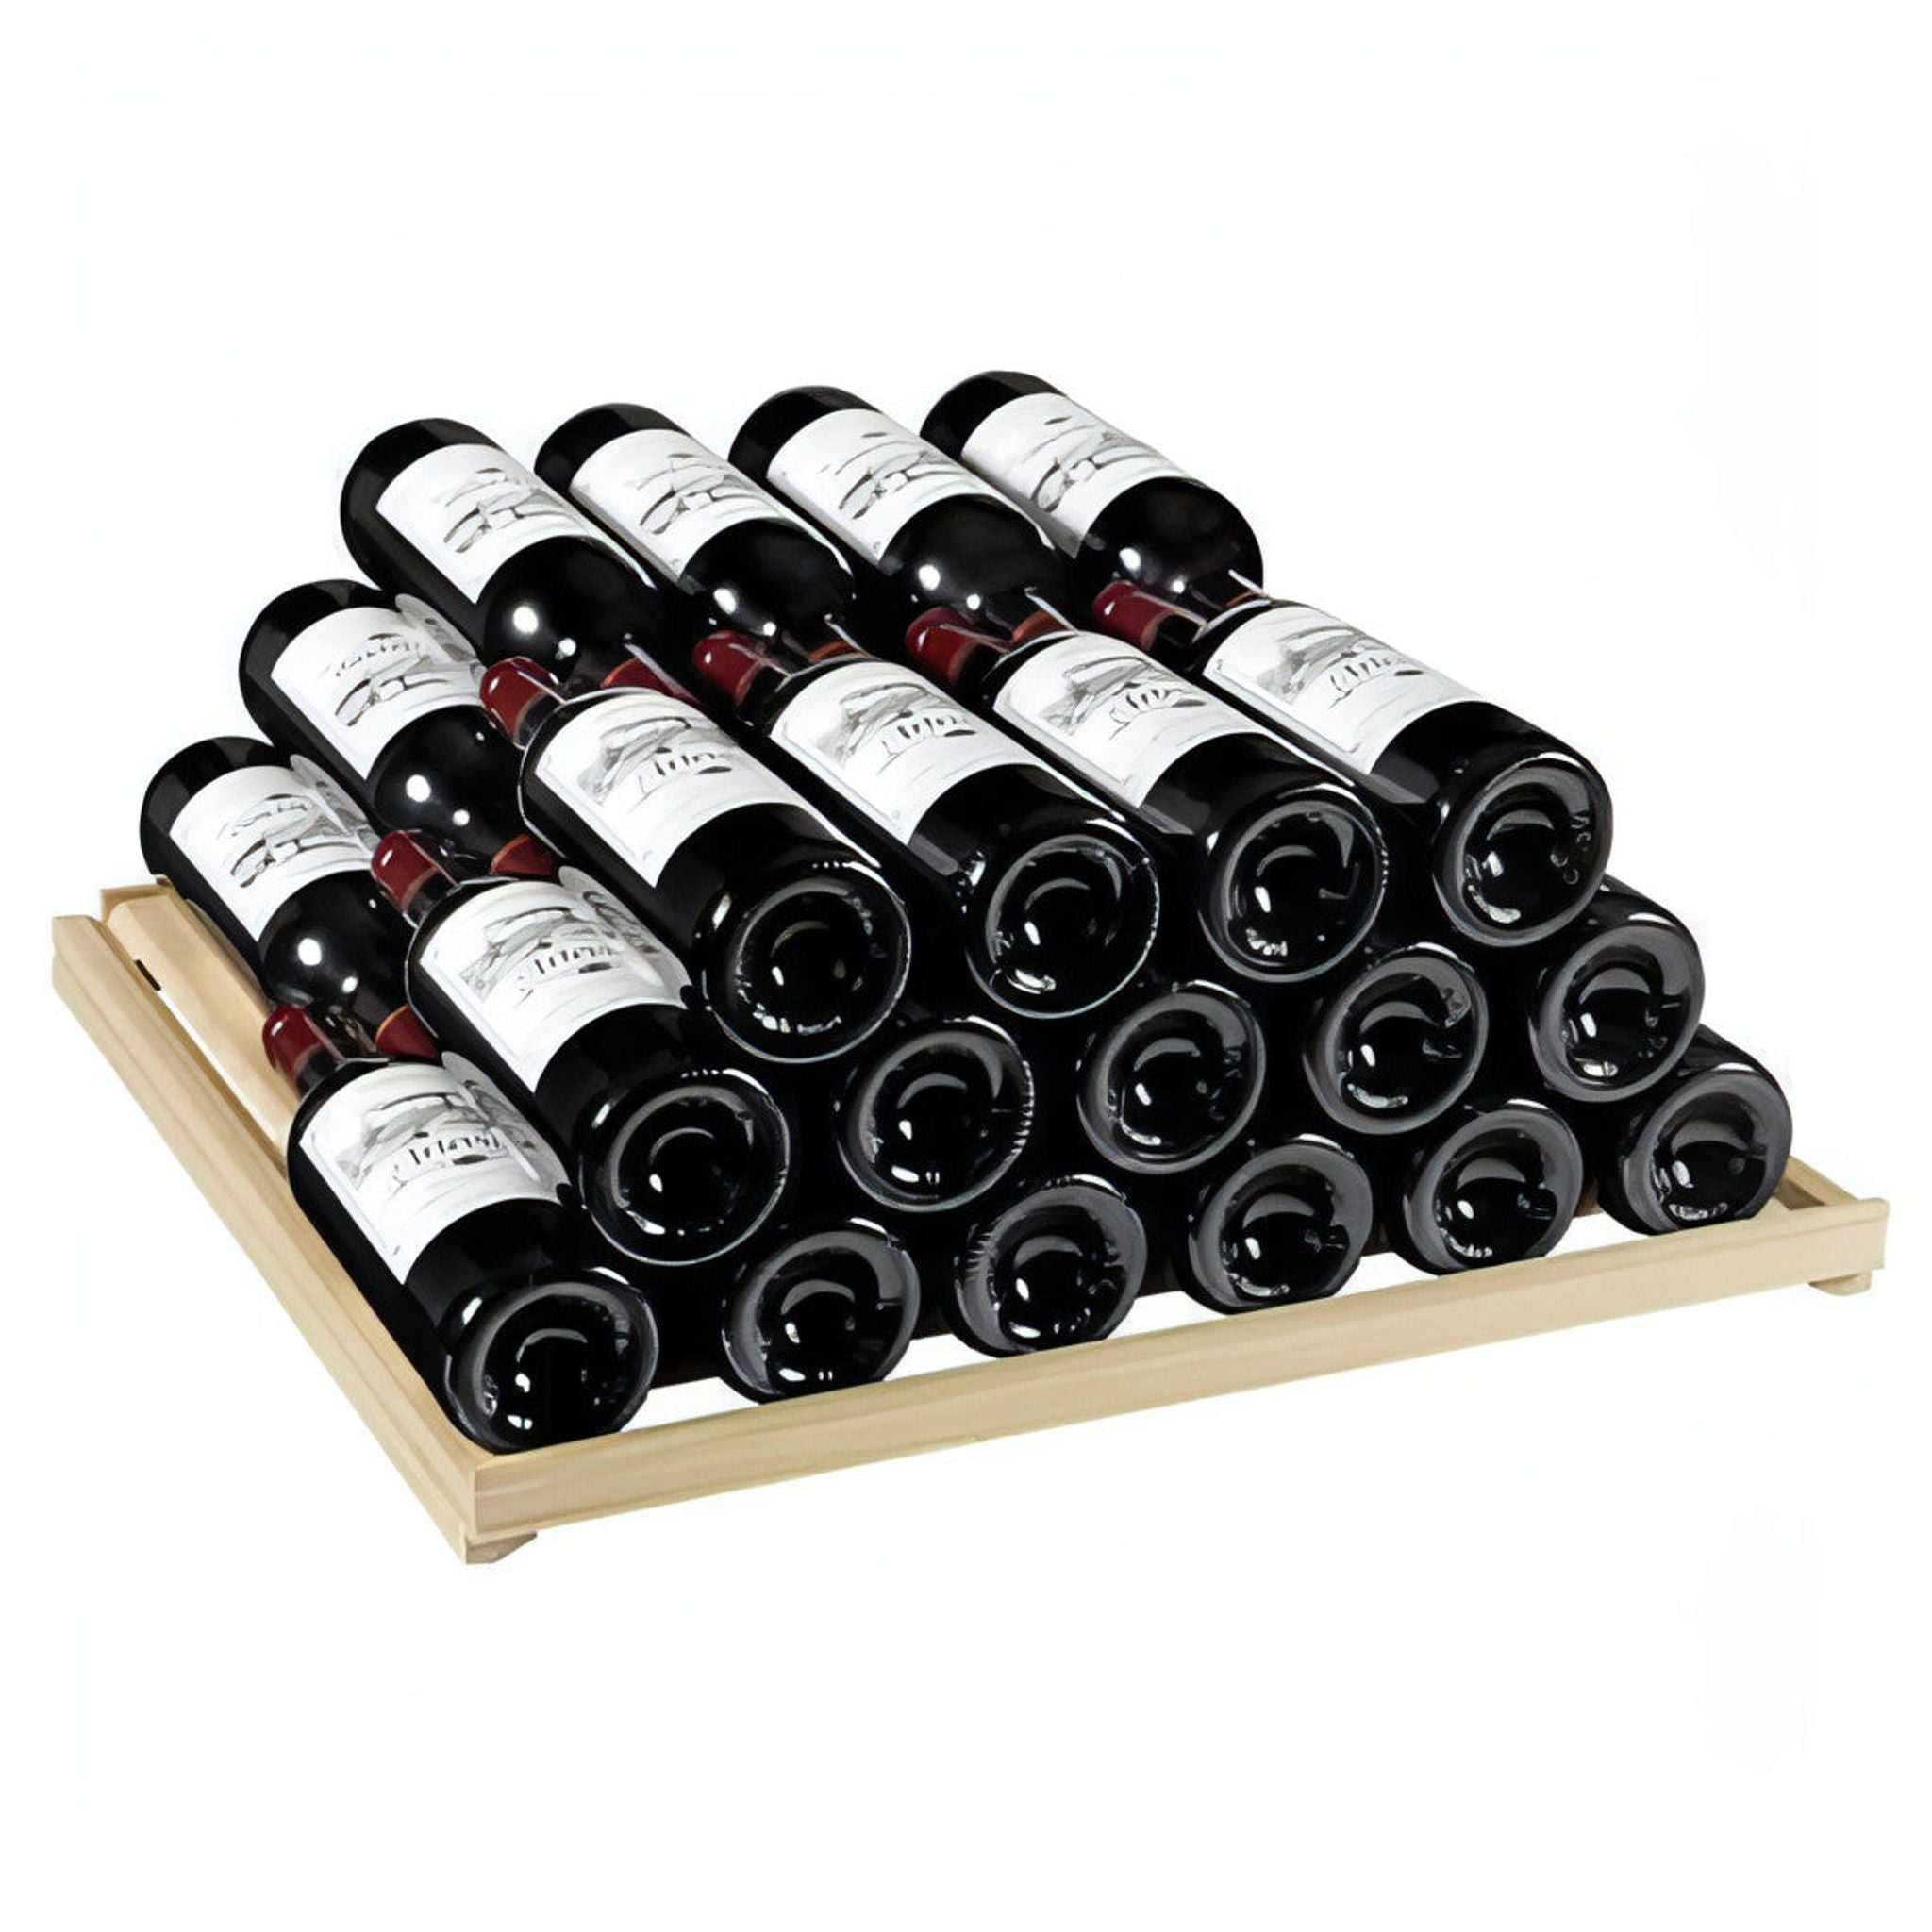 Artevino Oxygen - 98 Bottle Single Zone Wine Cabinet OXP1T98NVSD - Silver